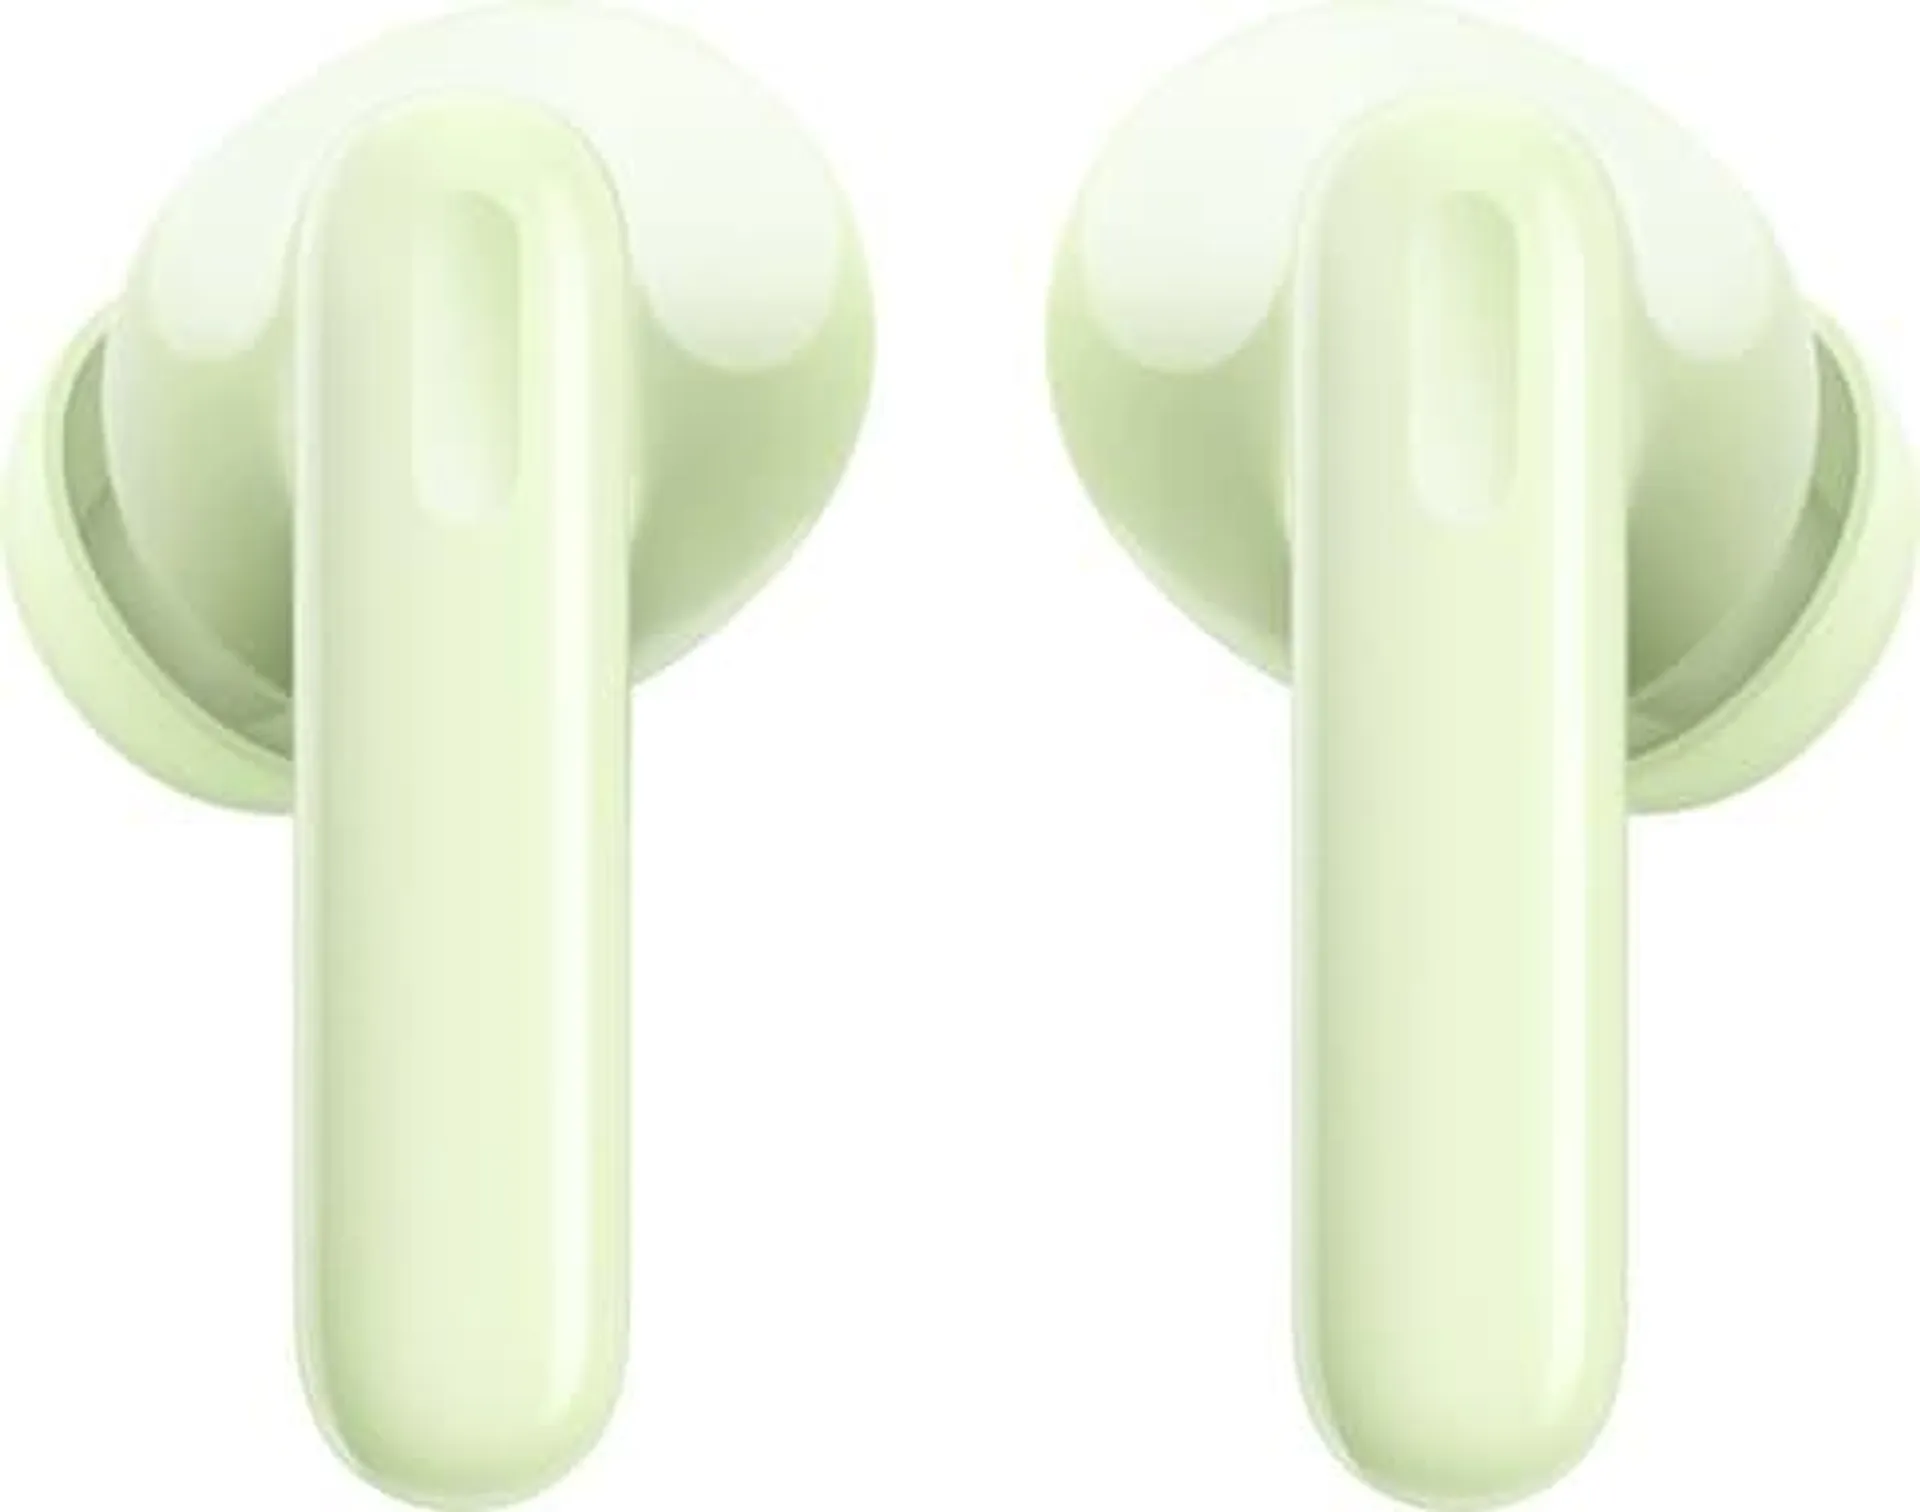 Enco Air 3 Pro True Wireless In-Ear Headset